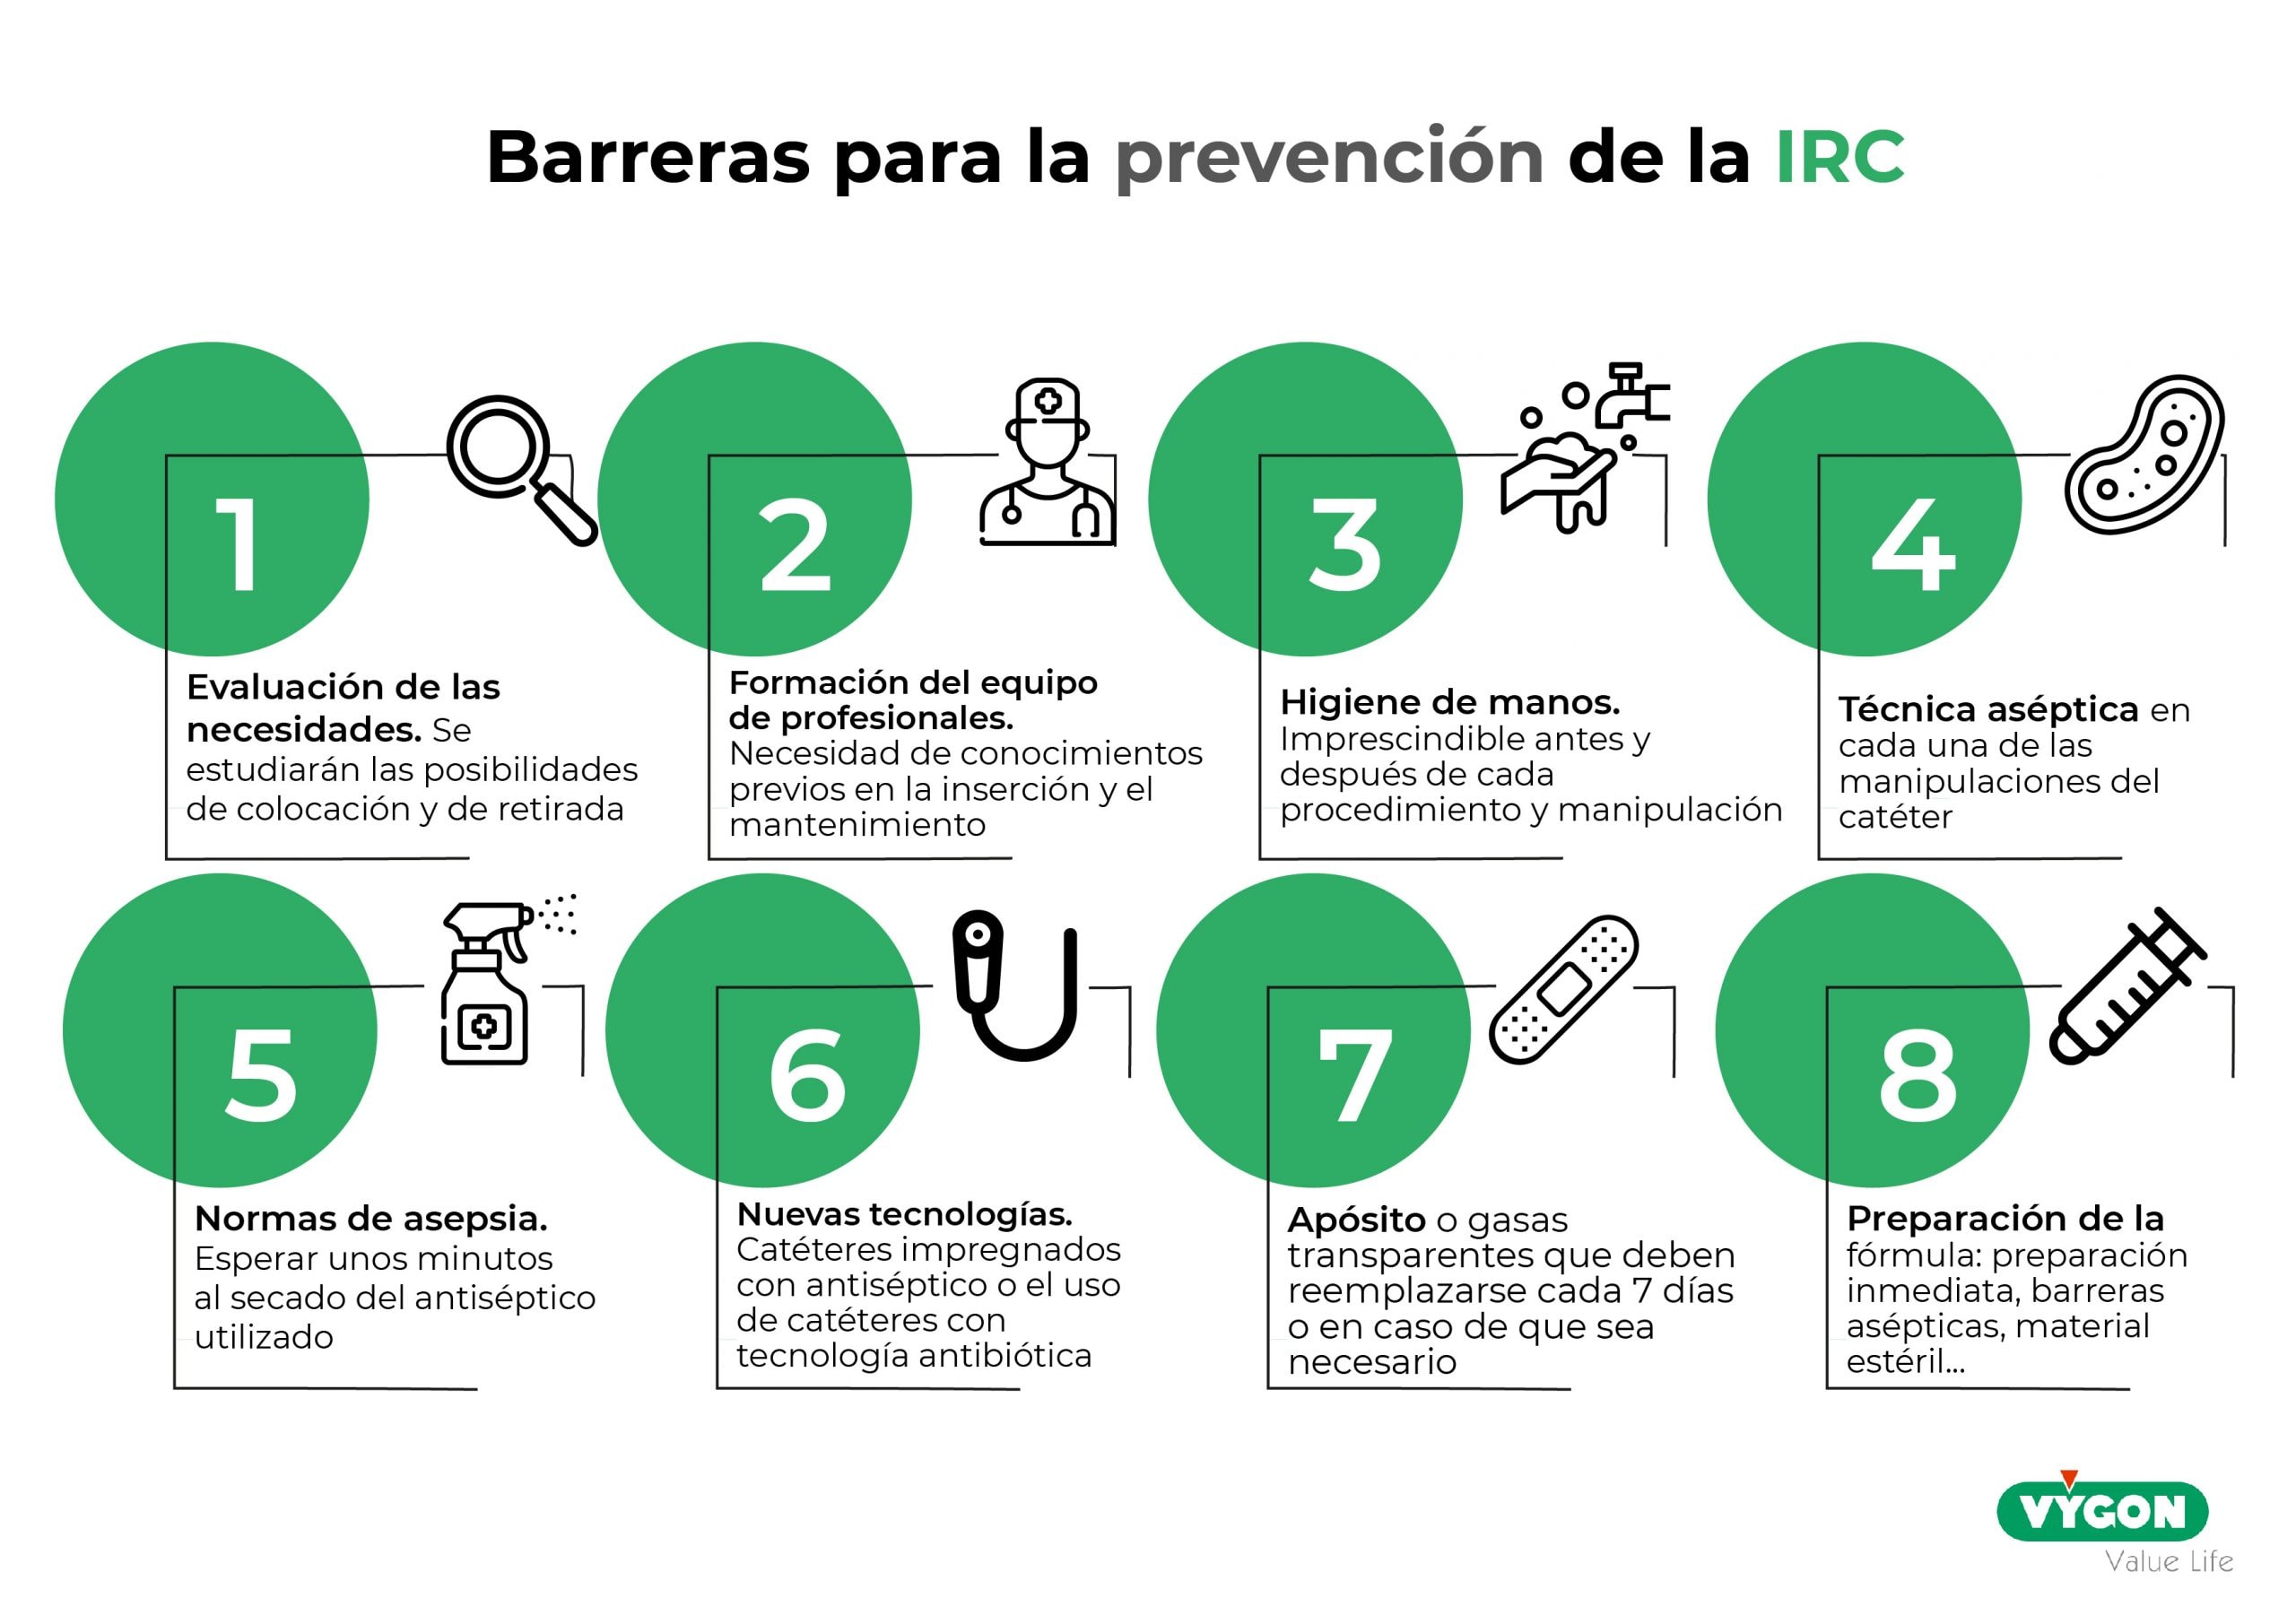 Barreras de prevención de la IRC